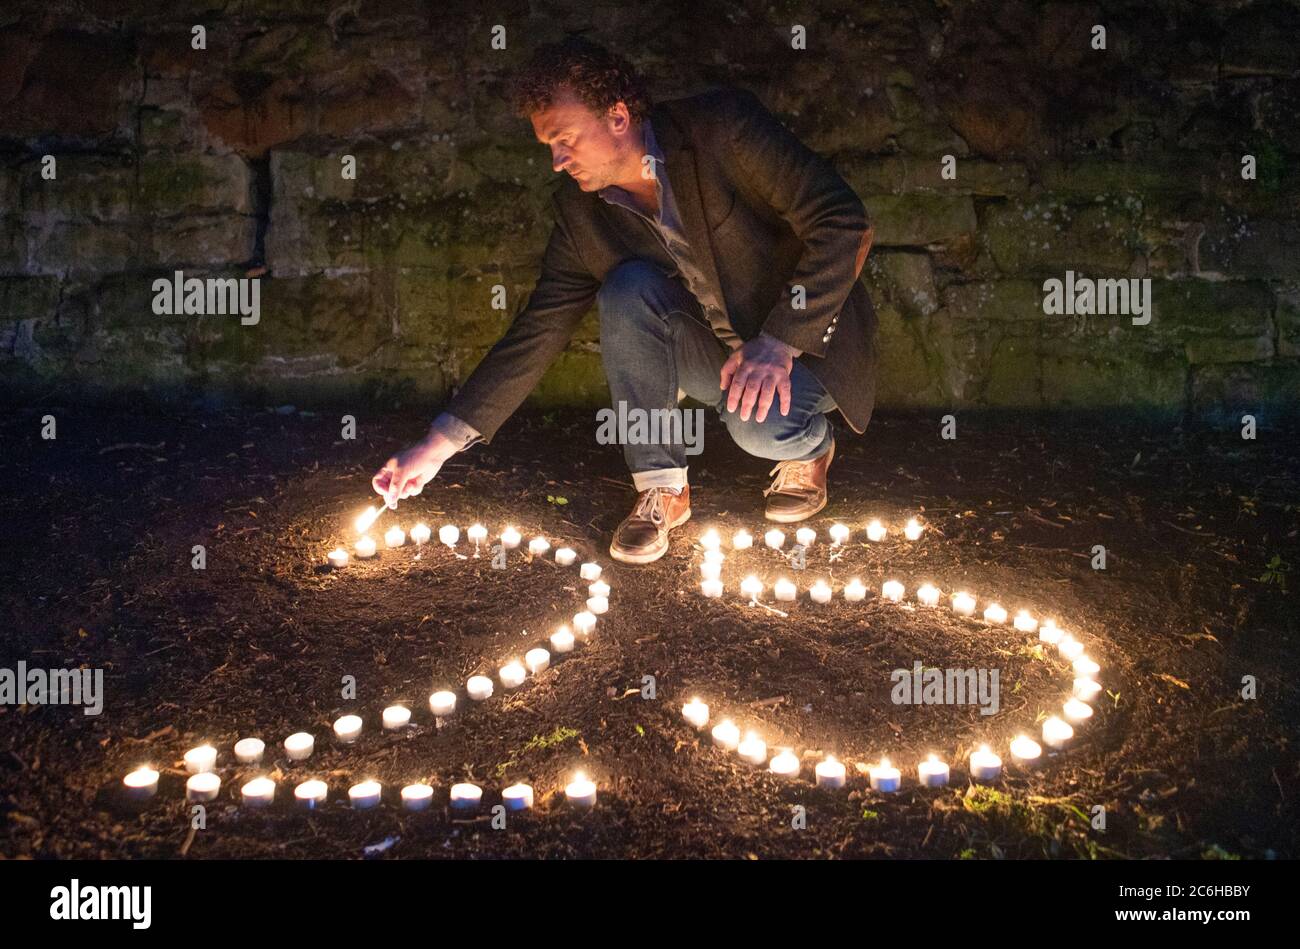 Der preisgekrönte Regisseur Samir Mehanovic, der 1995 als Einwanderer aus dem Bosnienkrieg nach Großbritannien kam und heute in Edinburgh lebt, zündet Kerzen an, um dem 25. Jahrestag des Genozids in Srebrenica zu gedenken. Stockfoto